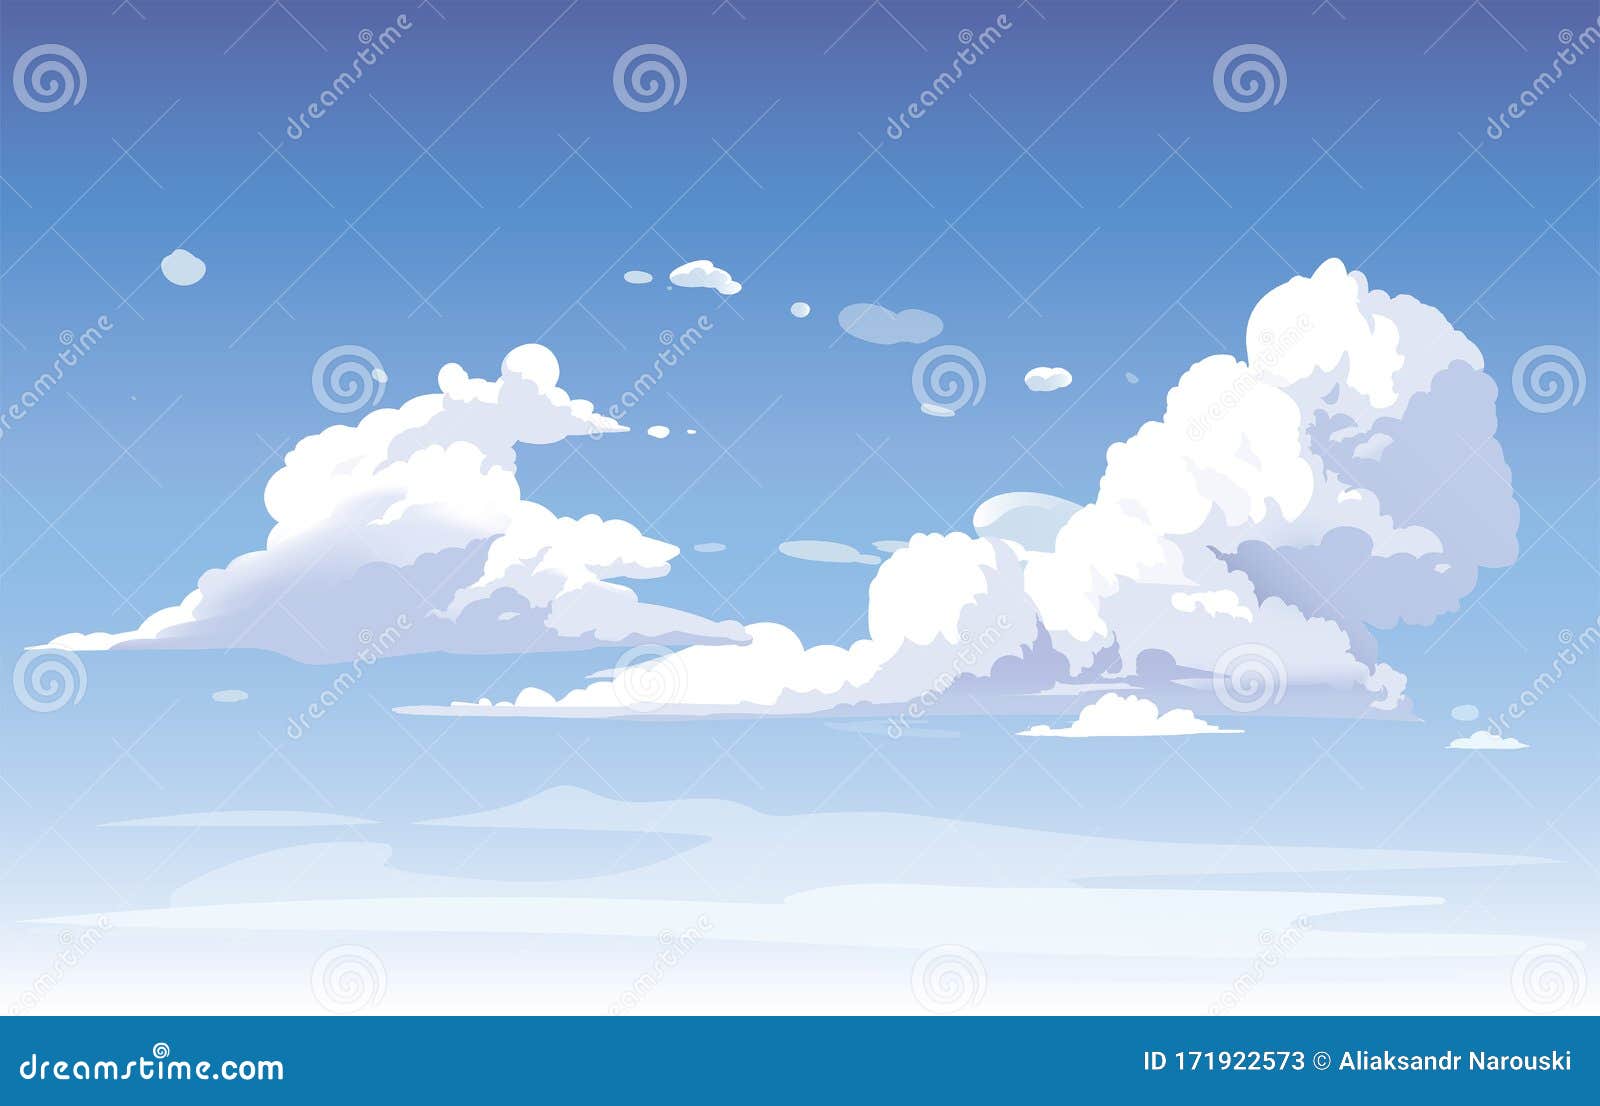 Thiết kế nền trời xanh: Hãy đến xem hình ảnh về thiết kế nền trời xanh – bức tranh kết hợp giữa bầu trời xanh tươi và đám mây trắng muốt, mang đến không gian thanh bình và tươi mới cho mọi người! Đây là một thiết kế tuyệt đẹp để trang trí ngôi nhà của bạn.